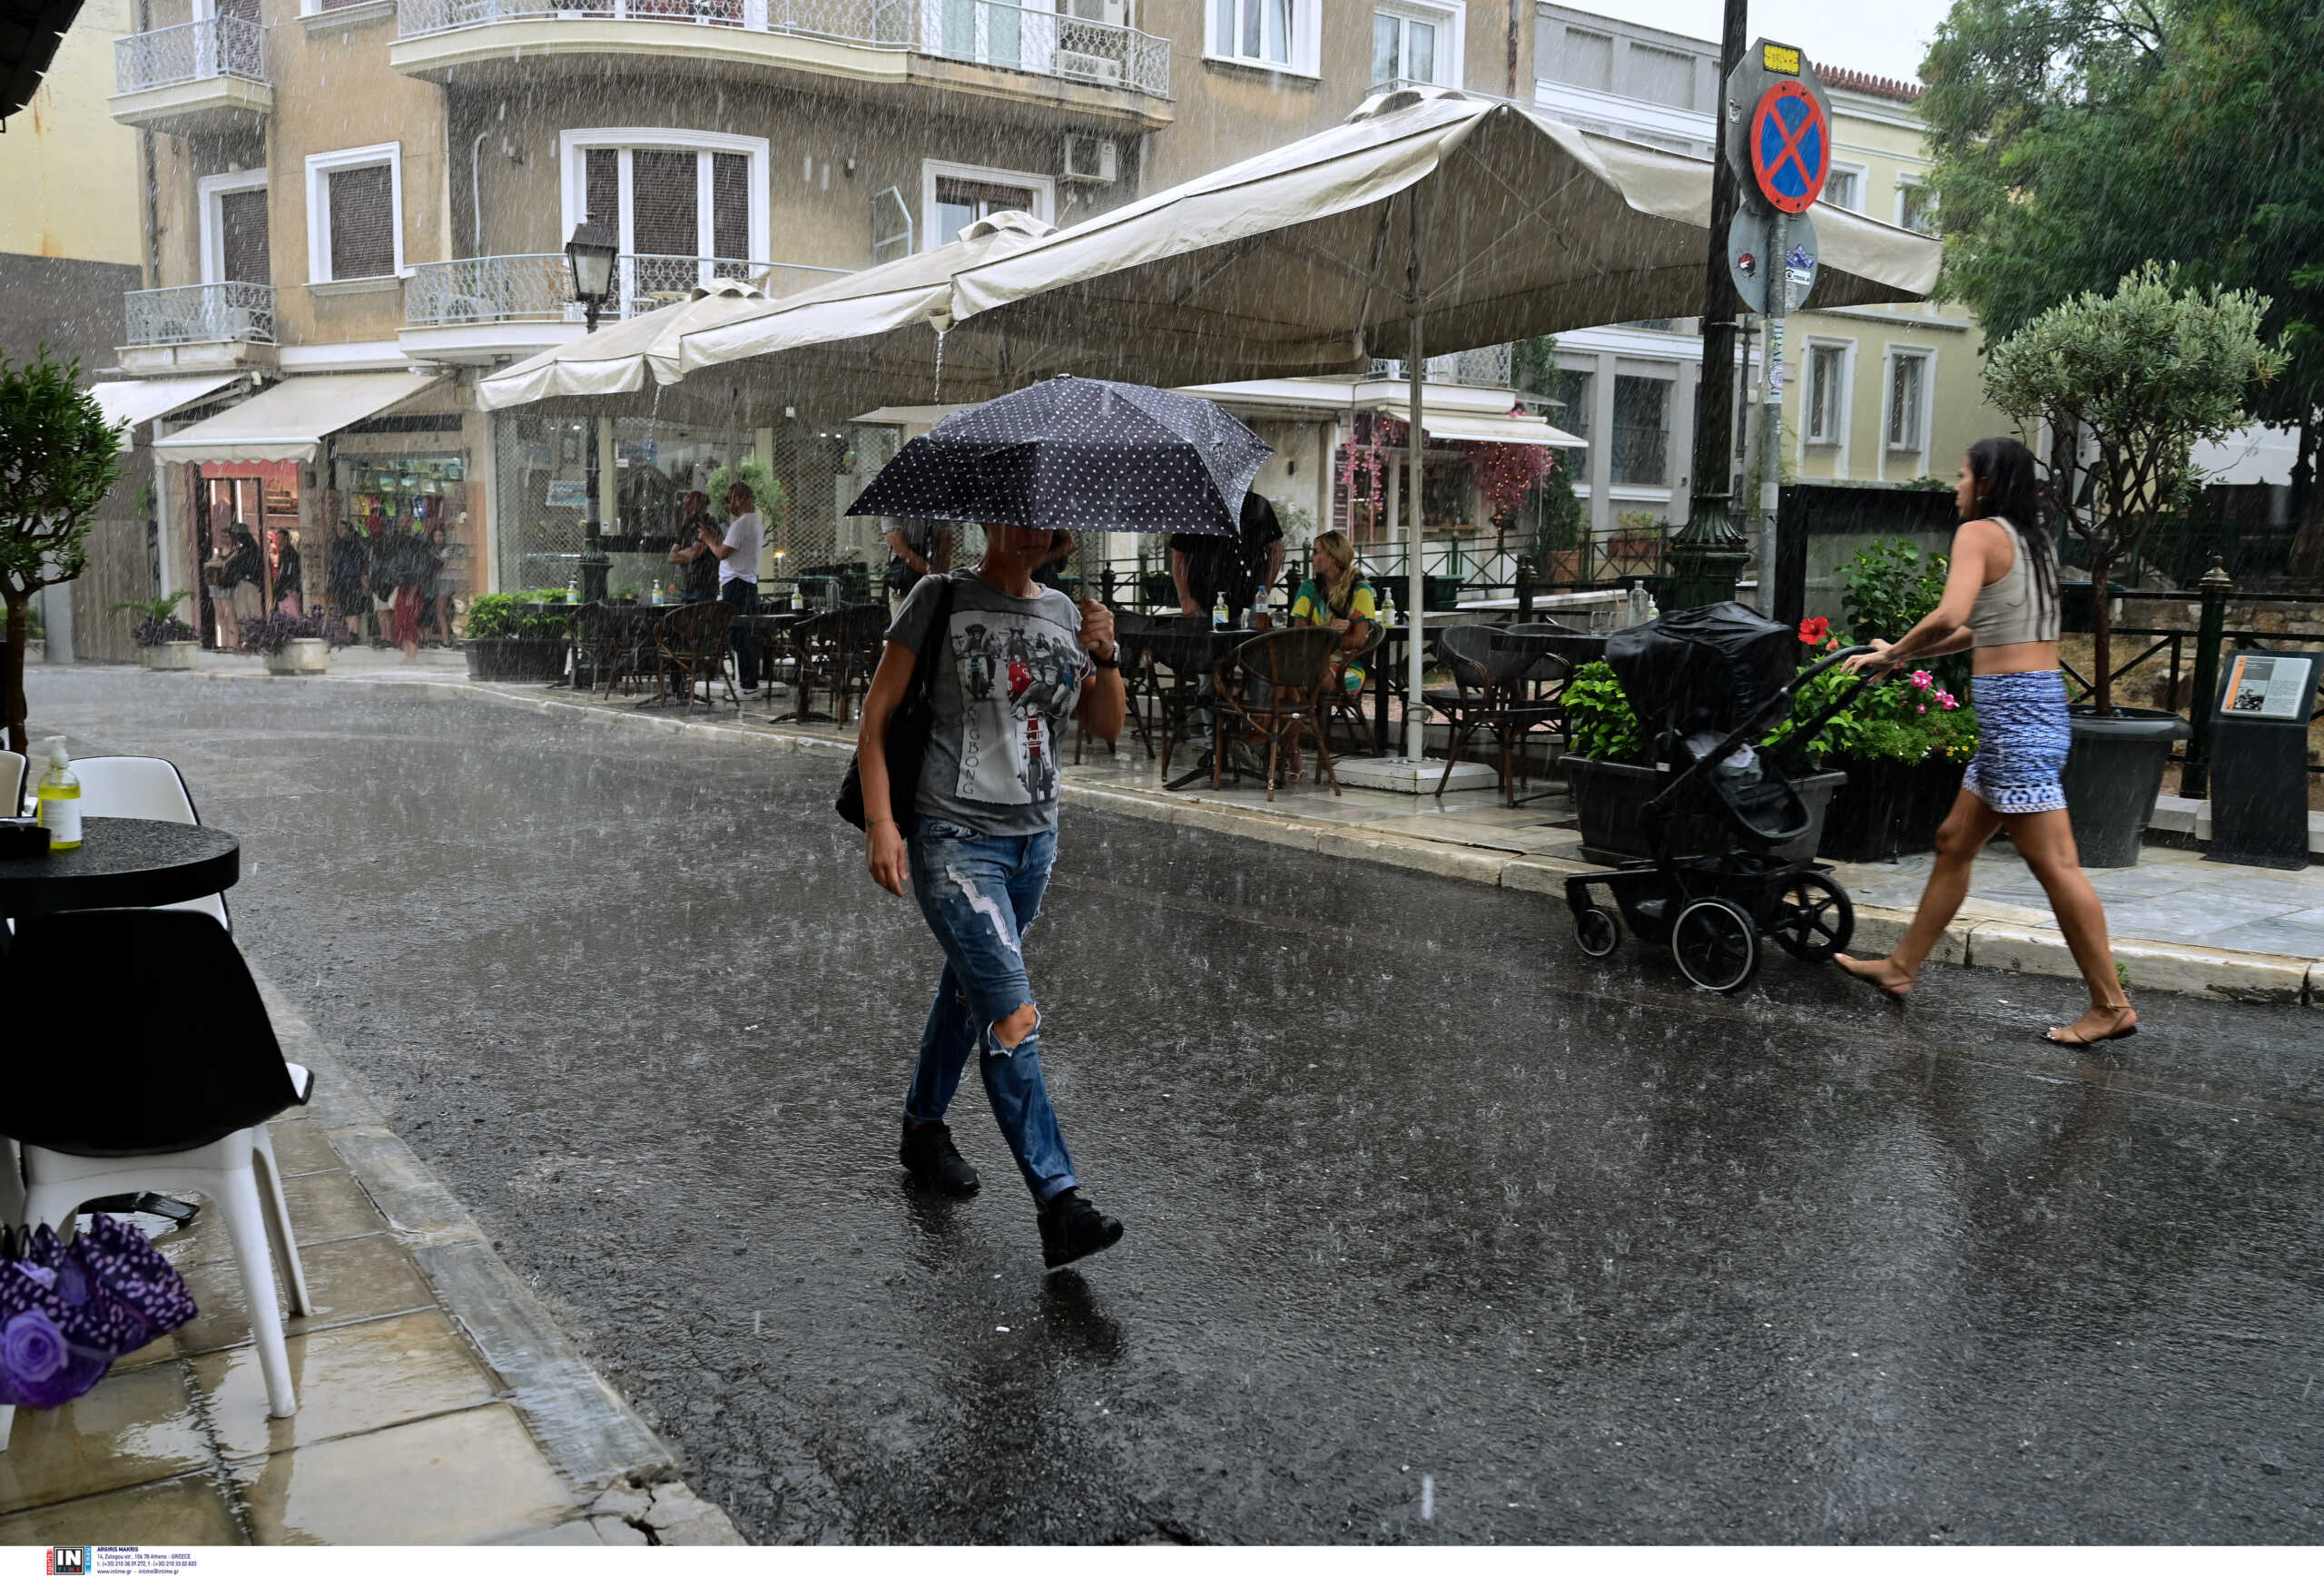 Καιρός – Κλέαρχος Μαρουσάκης: Έρχεται νέα κακοκαιρία με βροχές και καταιγίδες την επόμενη εβδομάδα